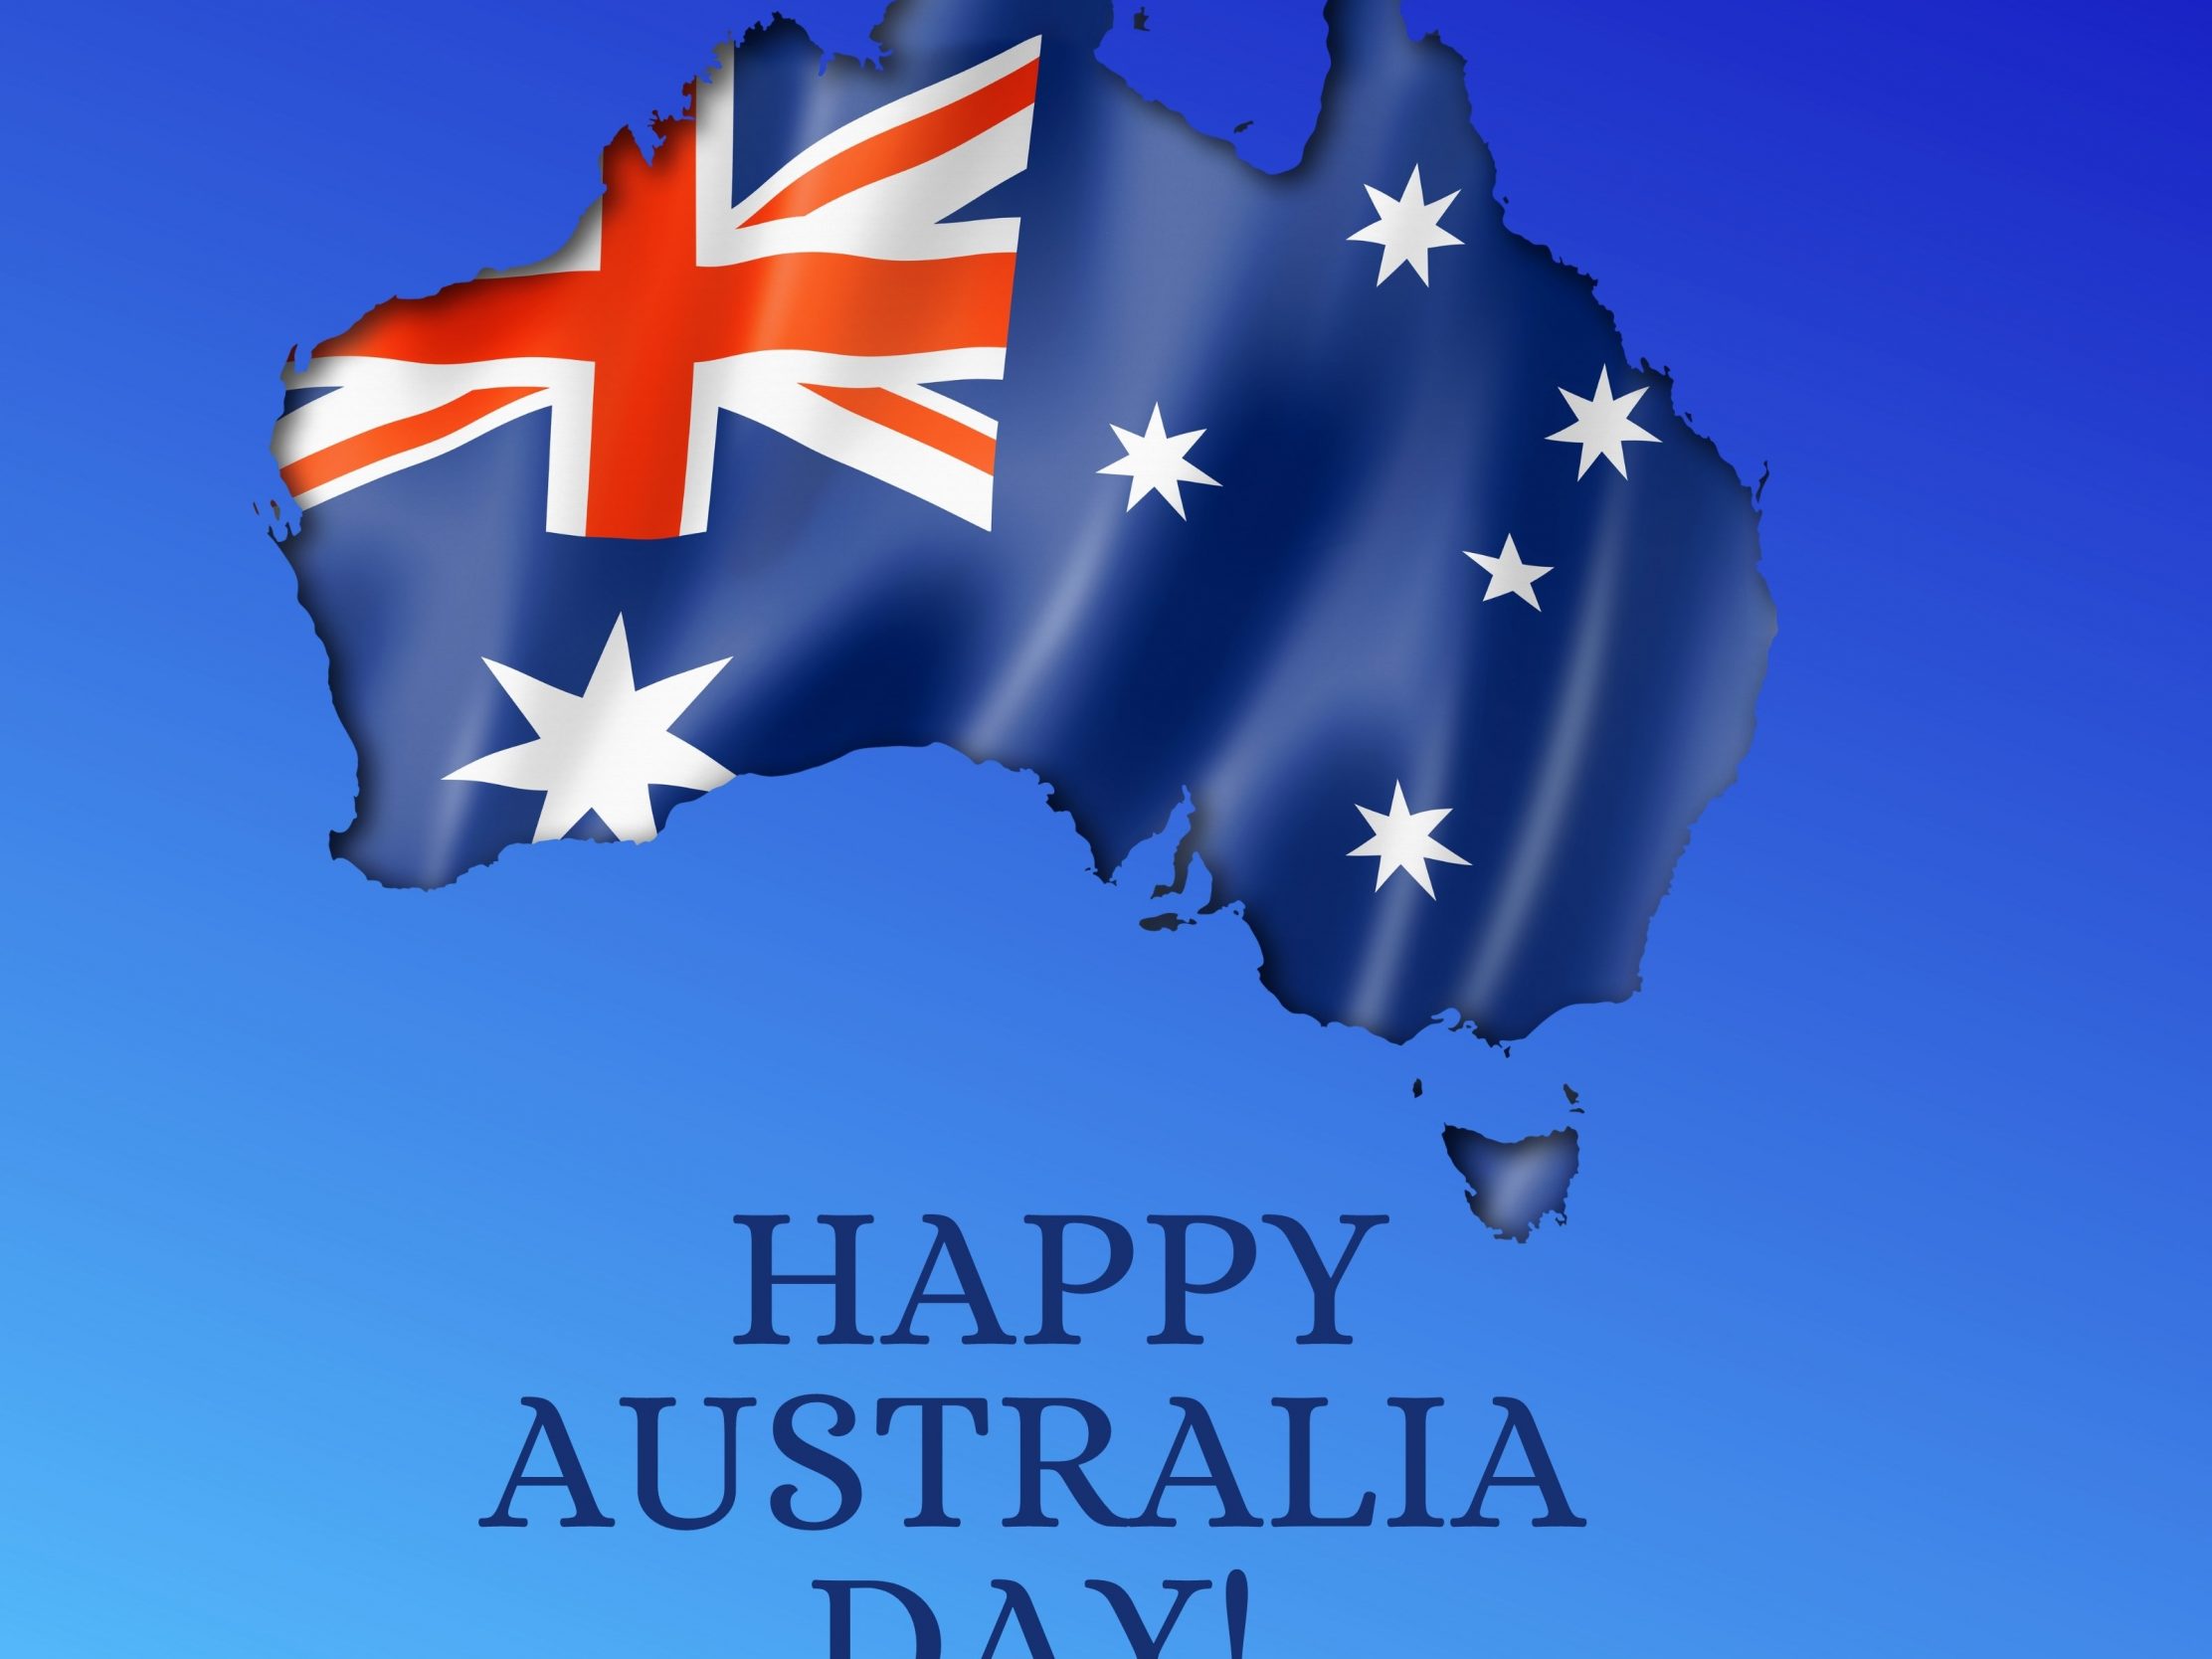 2224x1668 iPad Pro wallpapers Happy Australia Day iPad Wallpaper 2224x1668 pixels resolution